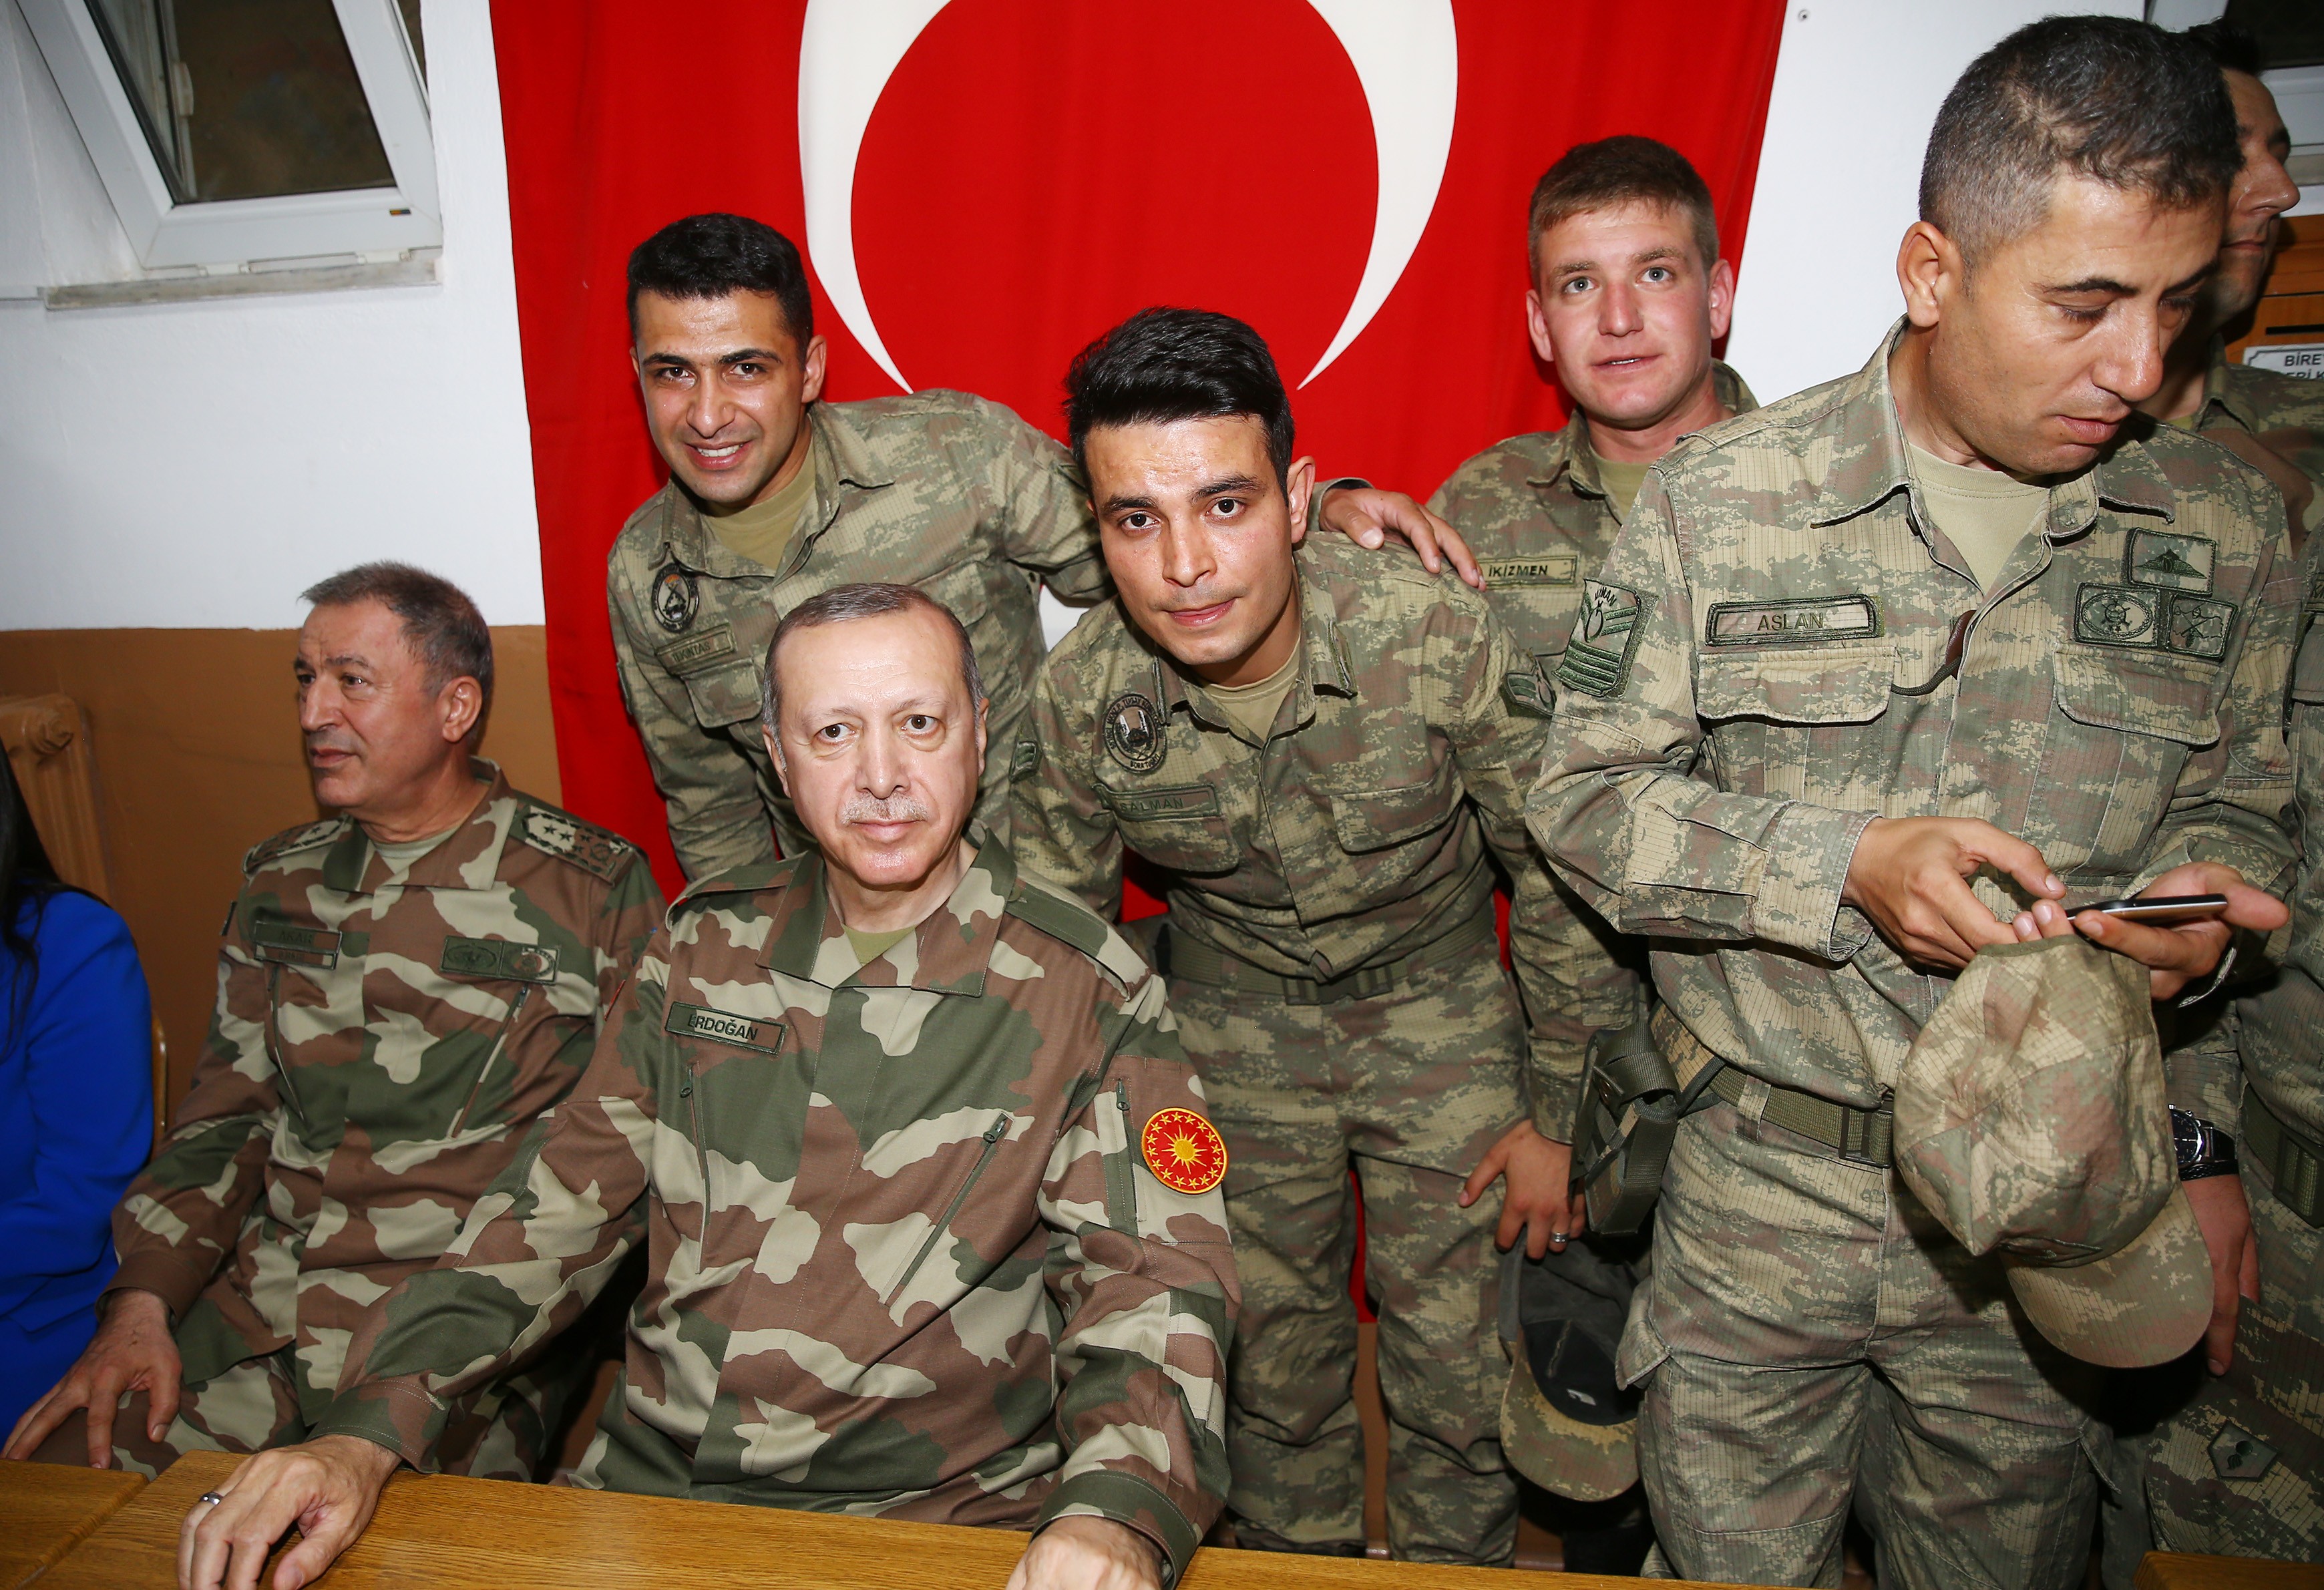 الرئيس التركي رجب طيب أردوغان يرتدي الزي العسكري5.jpg